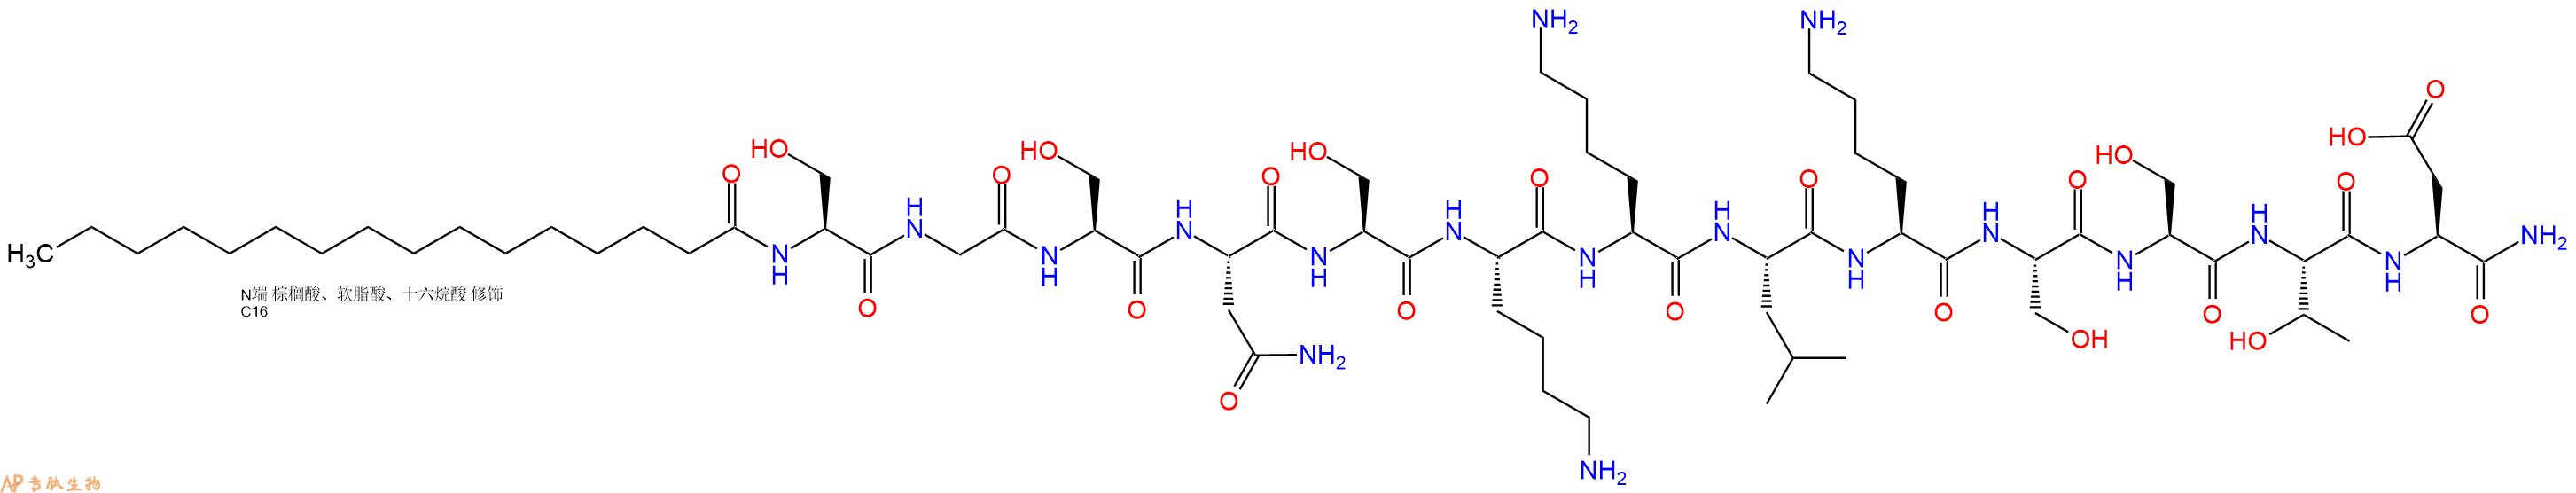 专肽生物产品PAL-Ser-Gly-Ser-Asn-Ser-Lys-Lys-Leu-Lys-Ser-Ser-Th